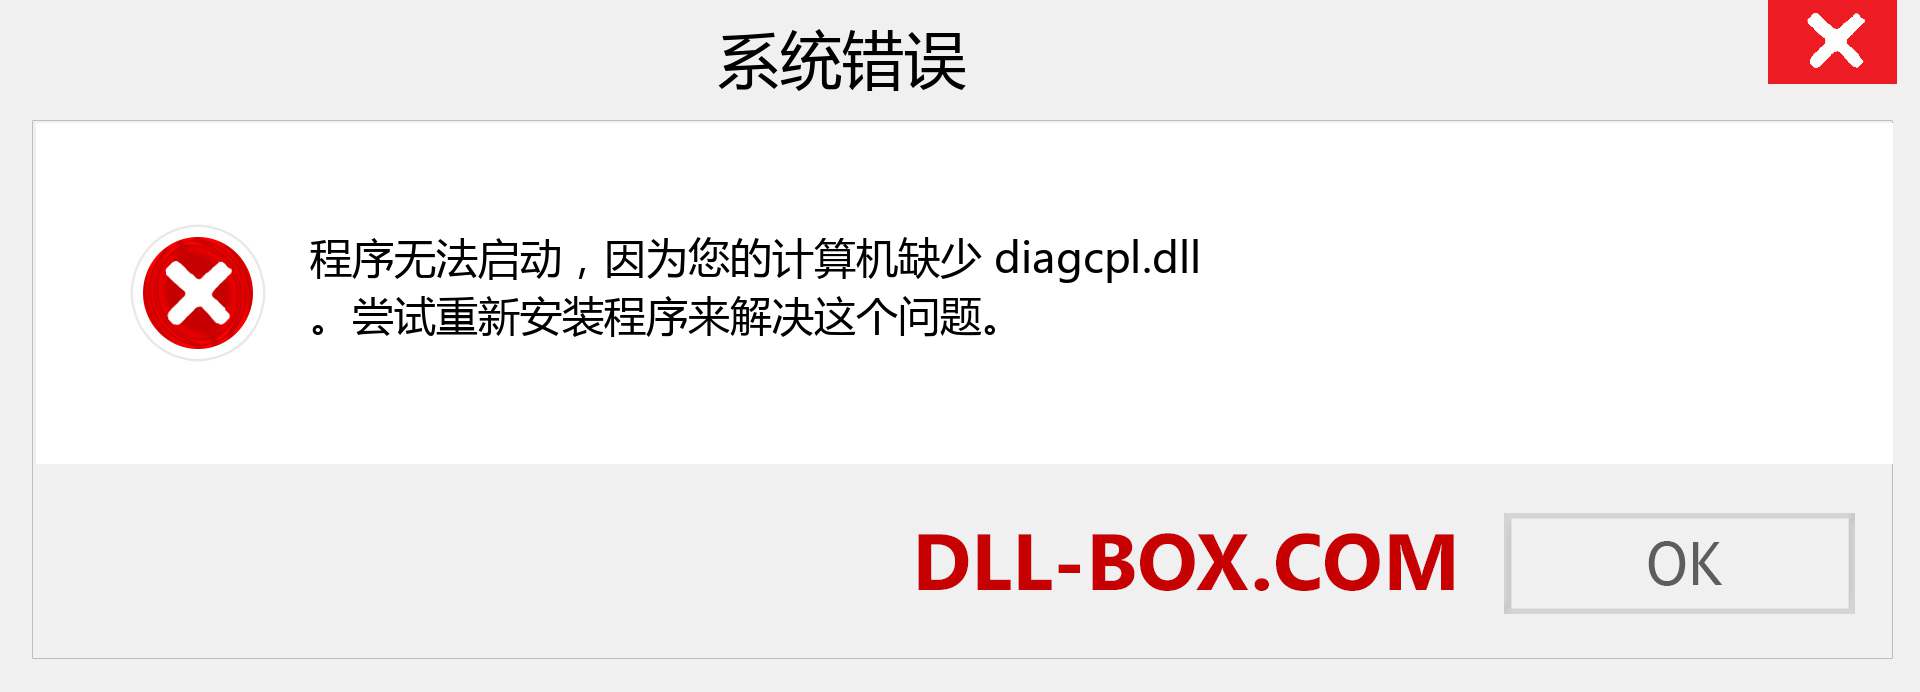 diagcpl.dll 文件丢失？。 适用于 Windows 7、8、10 的下载 - 修复 Windows、照片、图像上的 diagcpl dll 丢失错误